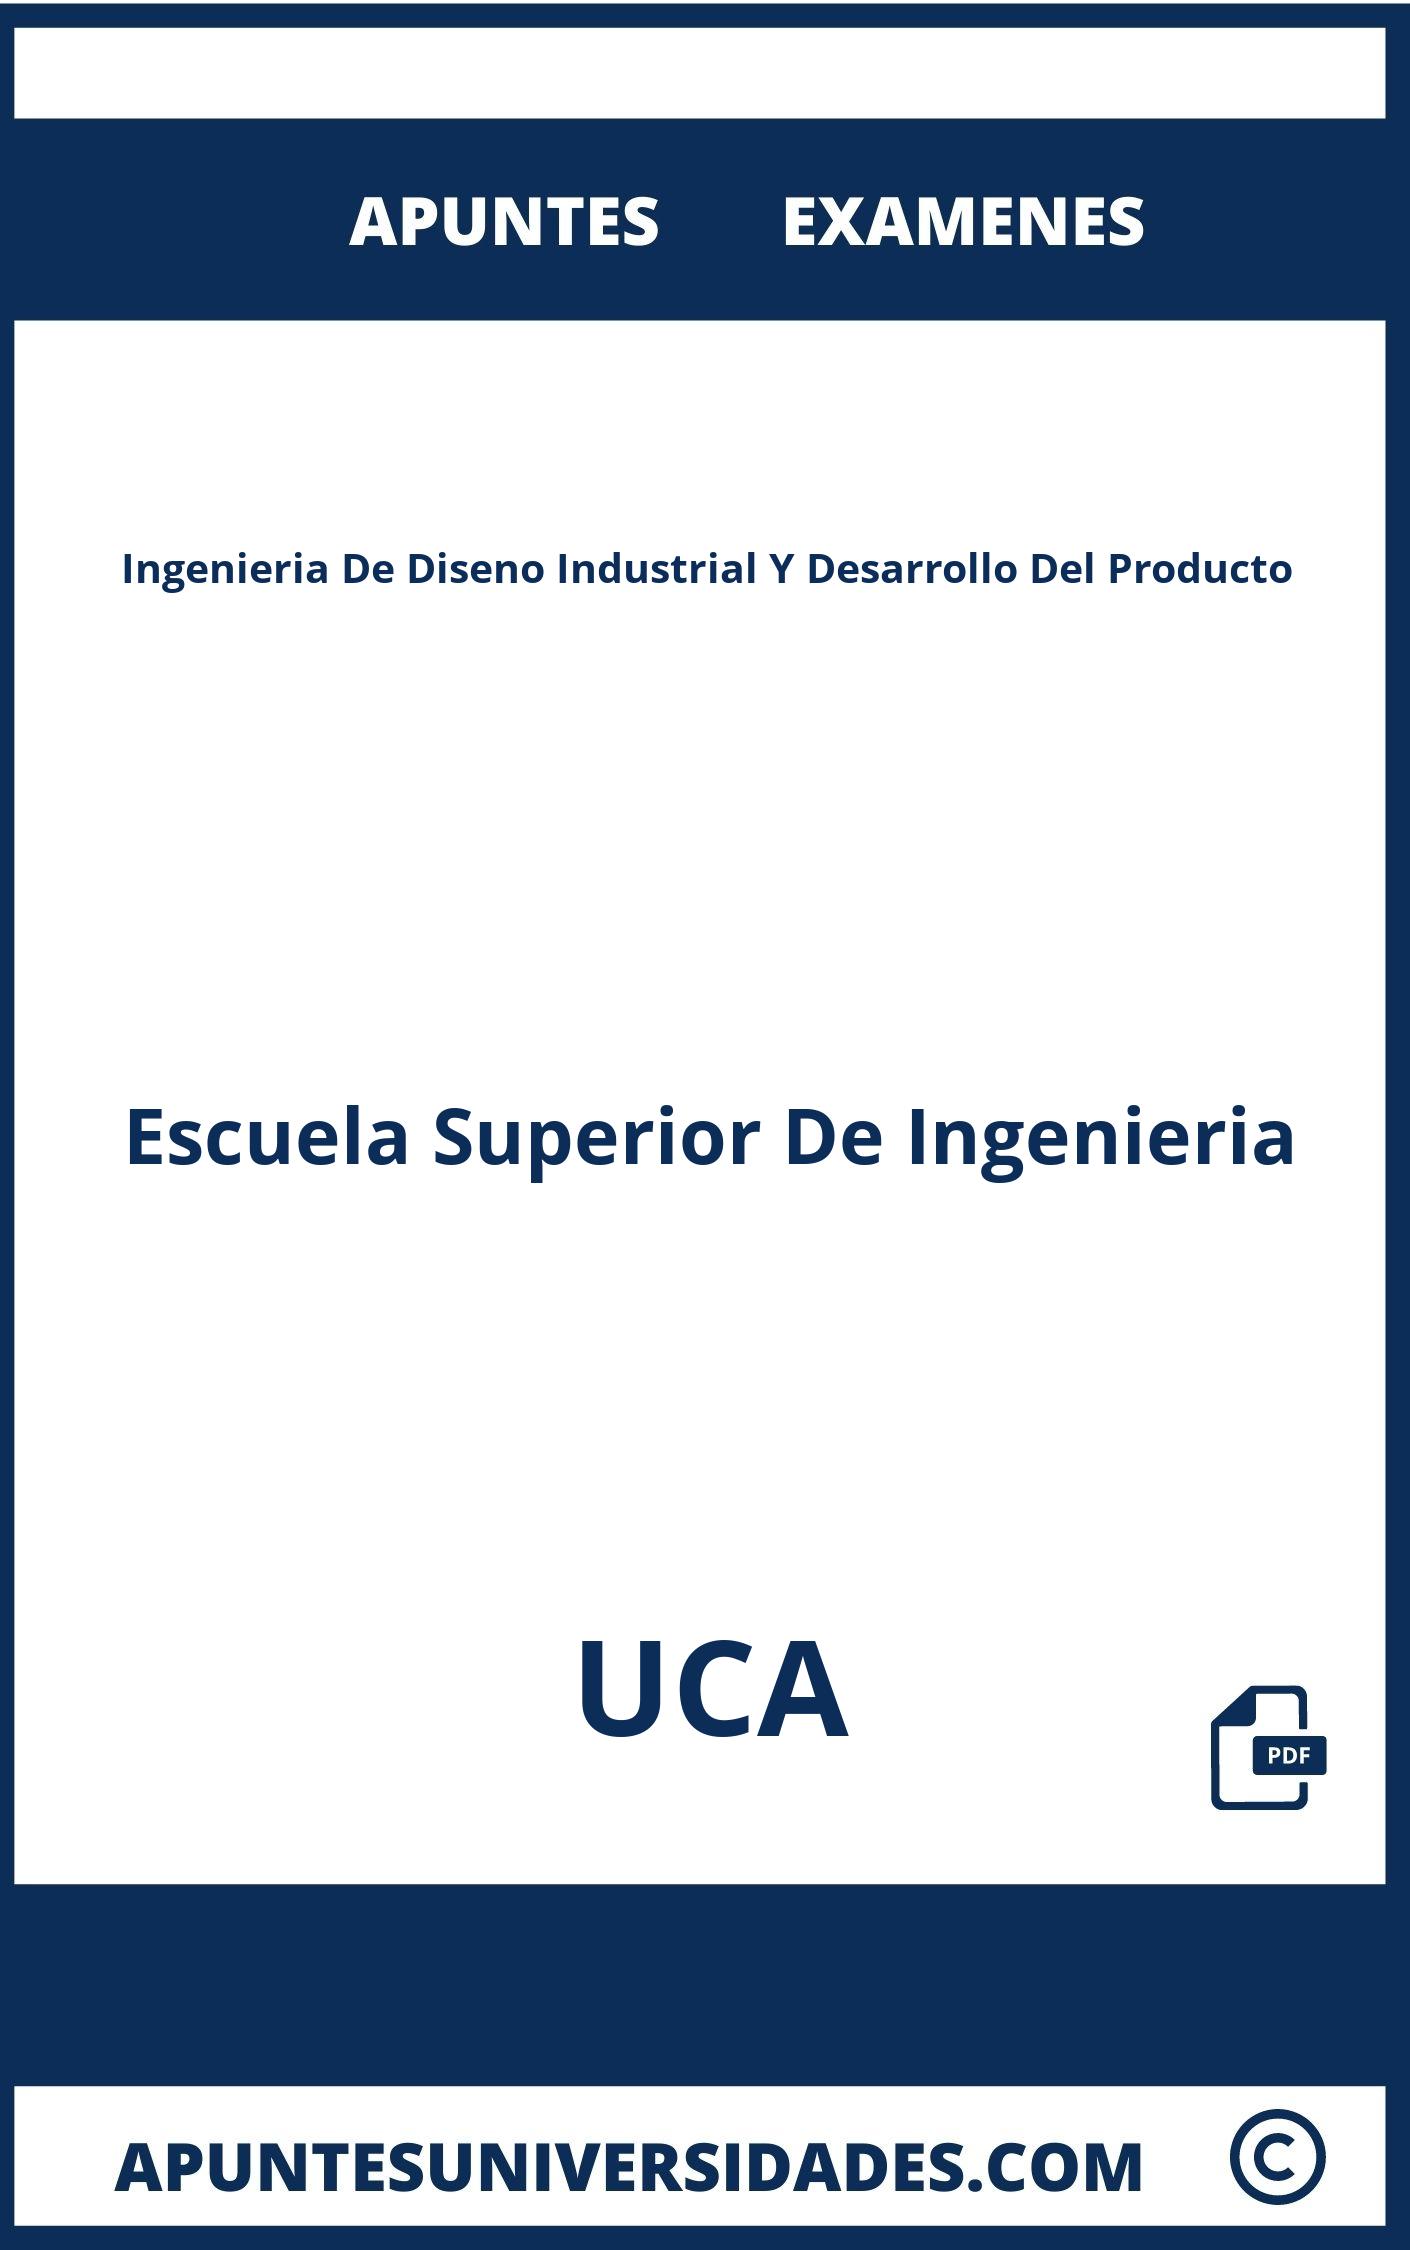 Ingenieria De Diseno Industrial Y Desarrollo Del Producto UCA Examenes Apuntes